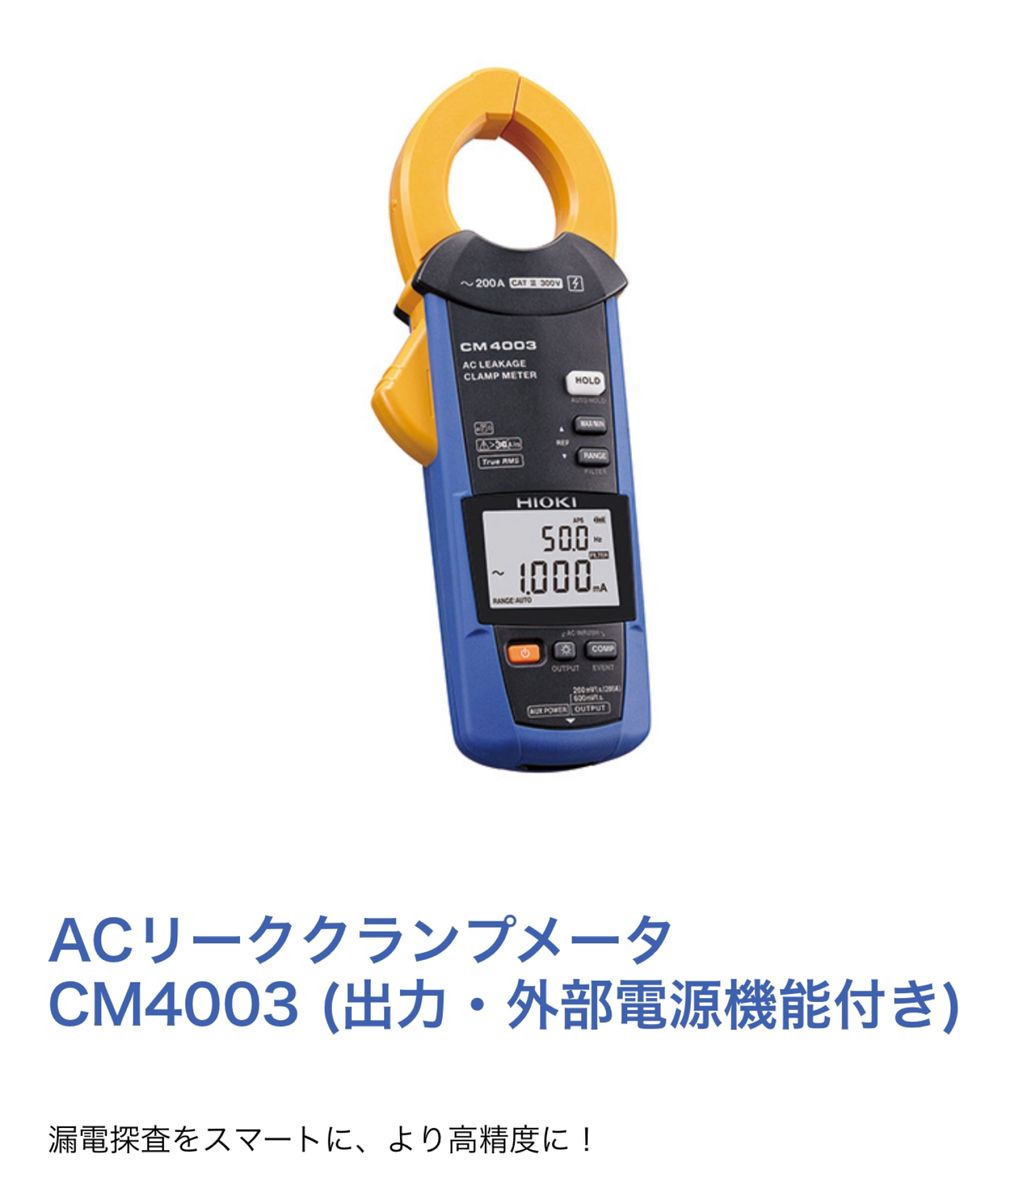 【新品未使用】HIOKI CM4003 電流クランプメーター 2台 【cowcow様専用】